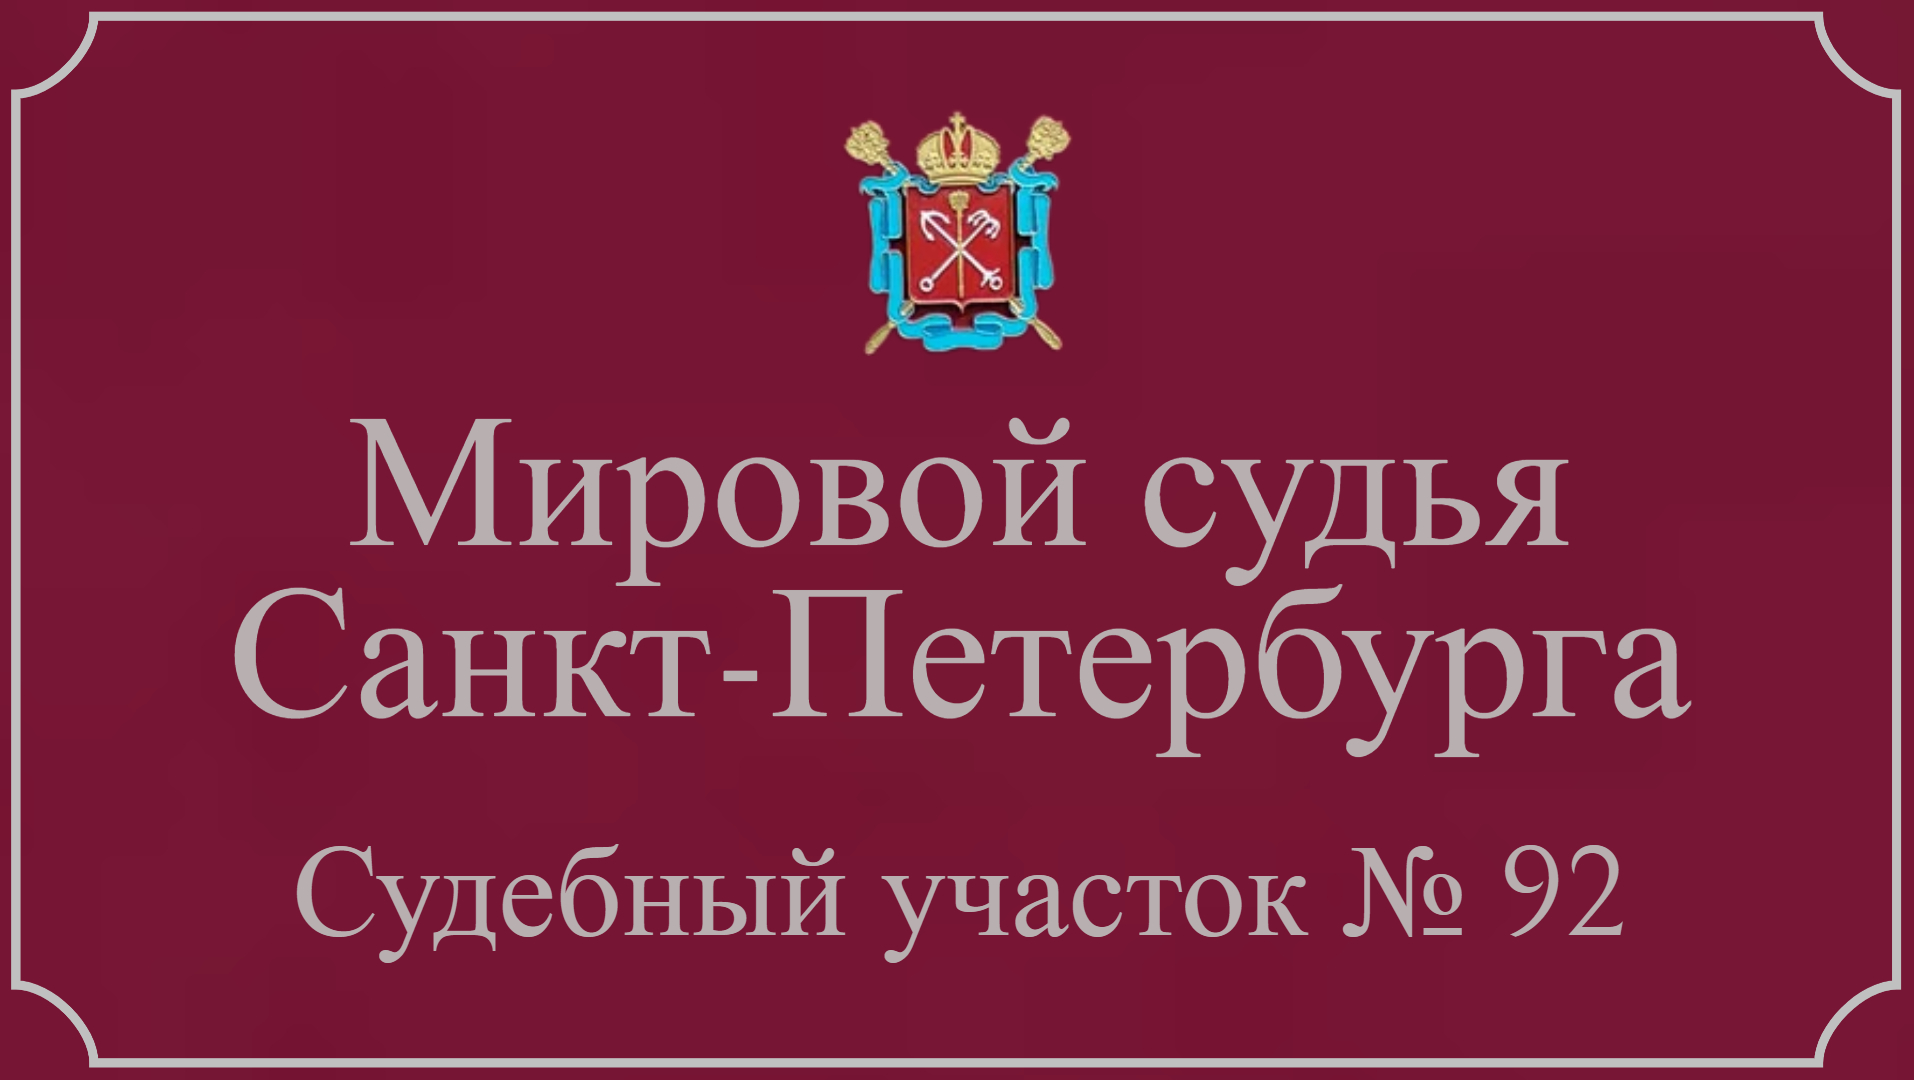 Информация по 92 судебному участку в Санкт-Петербурге.